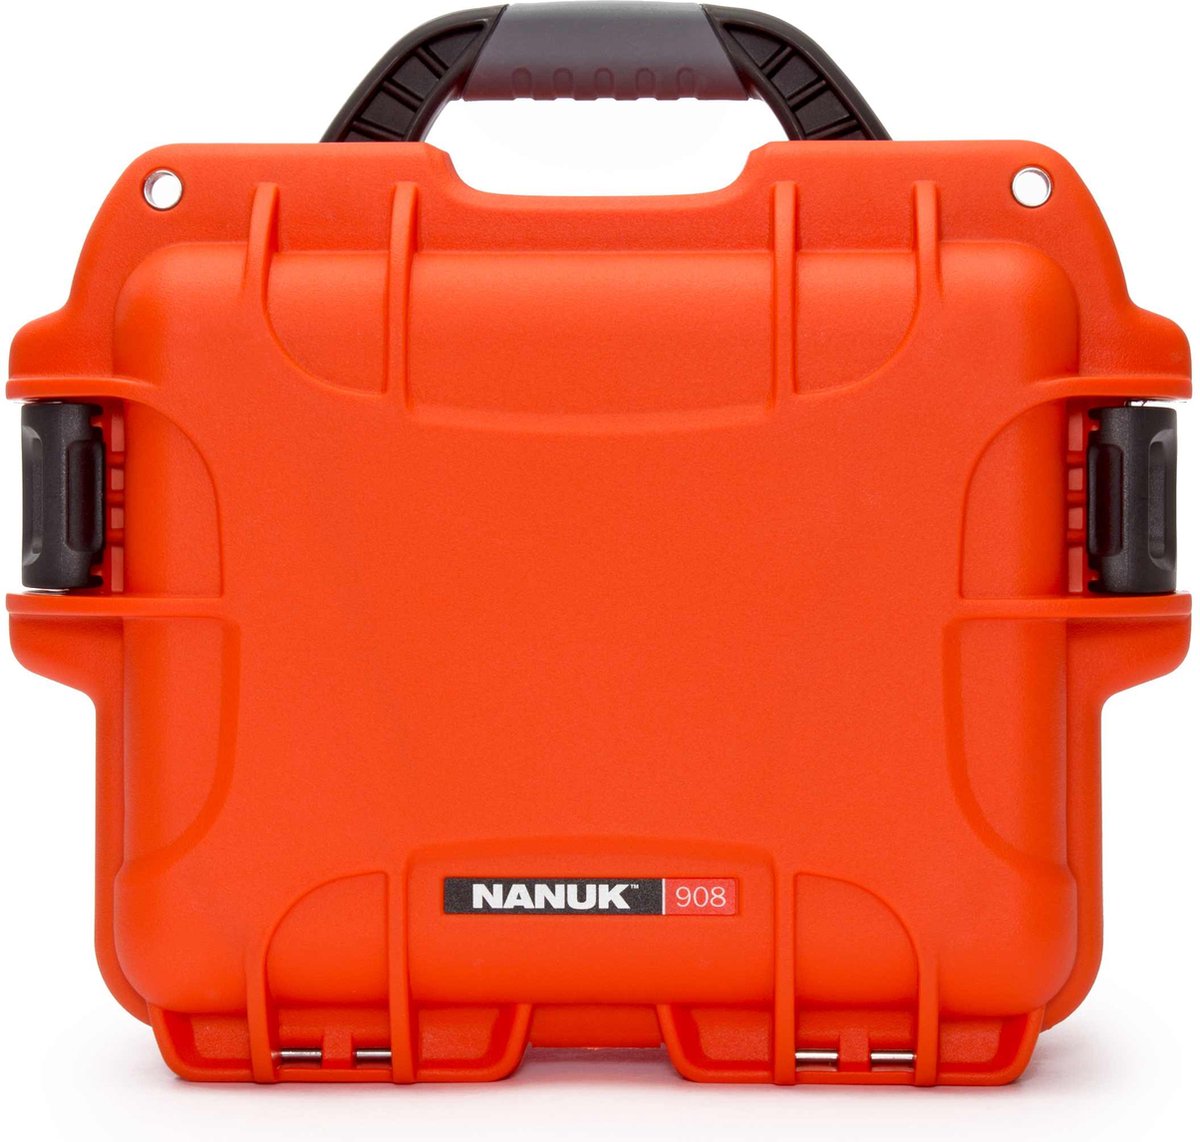 Nanuk 908 Case - Orange